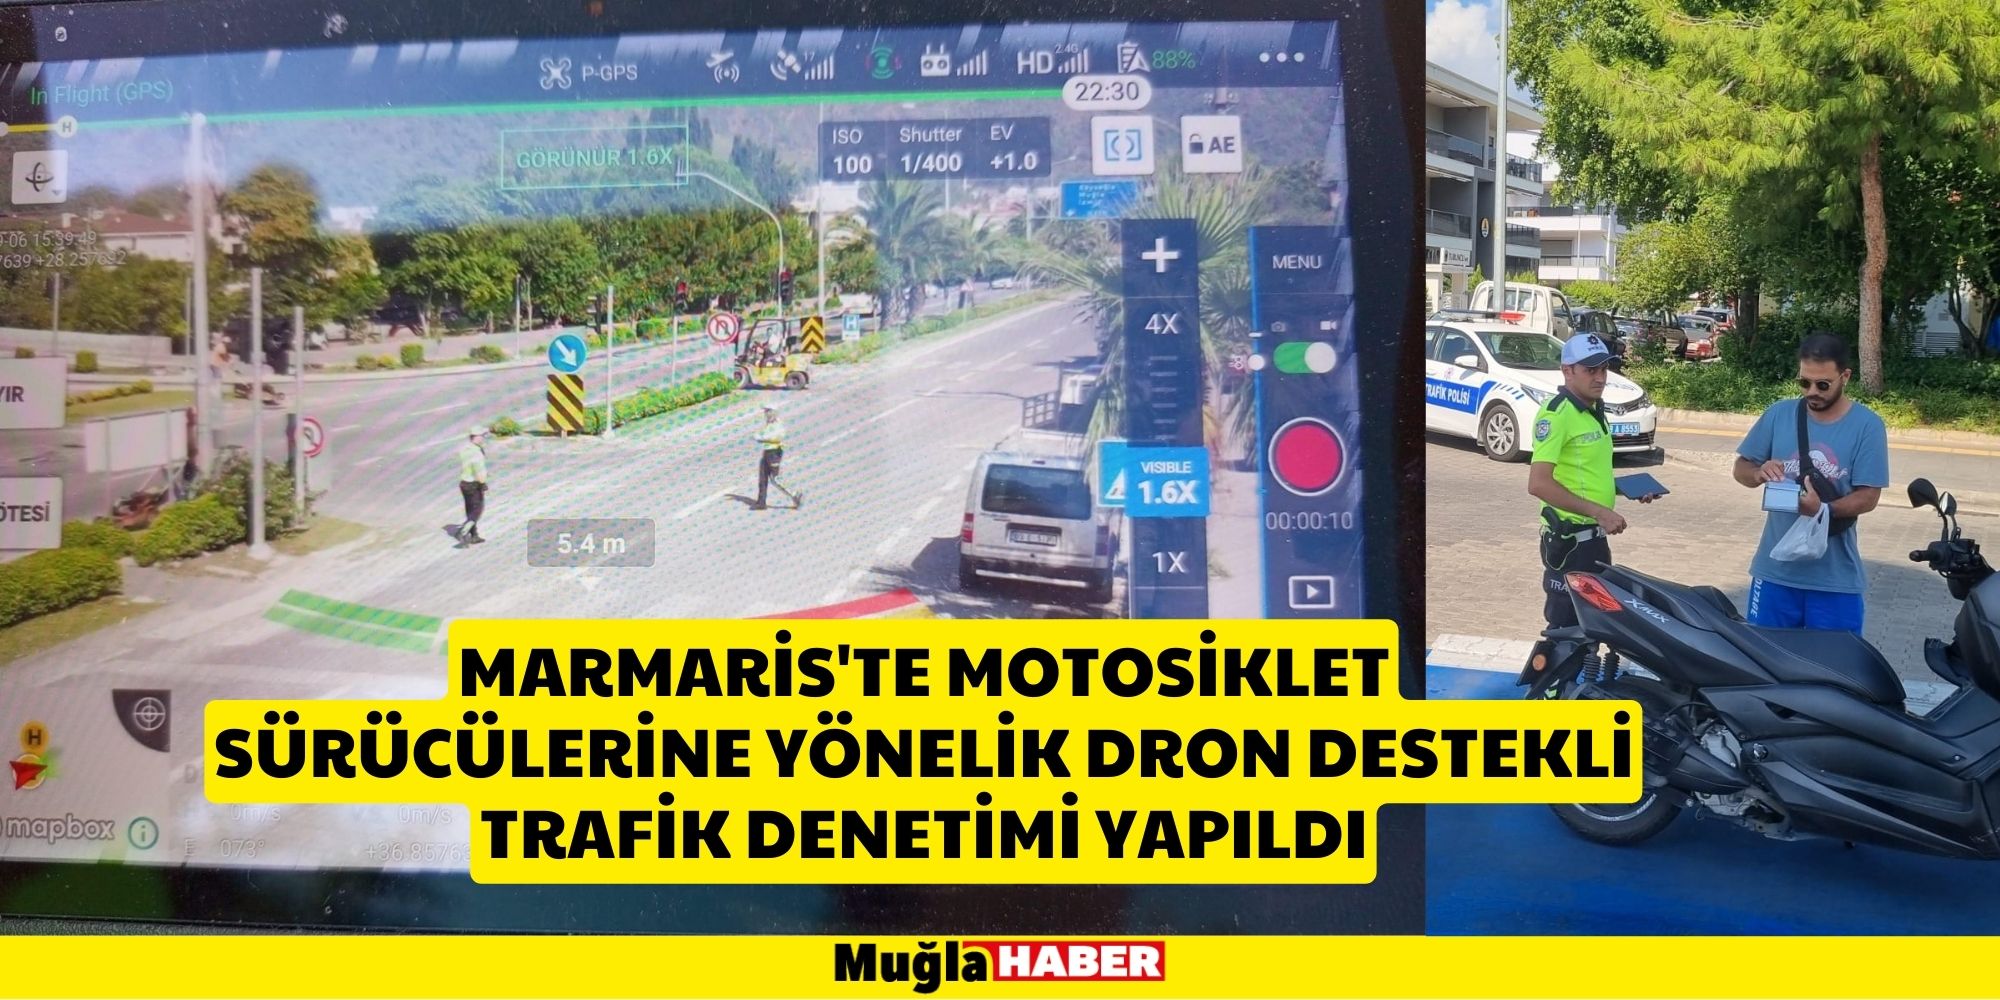 MARMARİS'TE DRON DESTEKLİ DENETİM YAPILDI